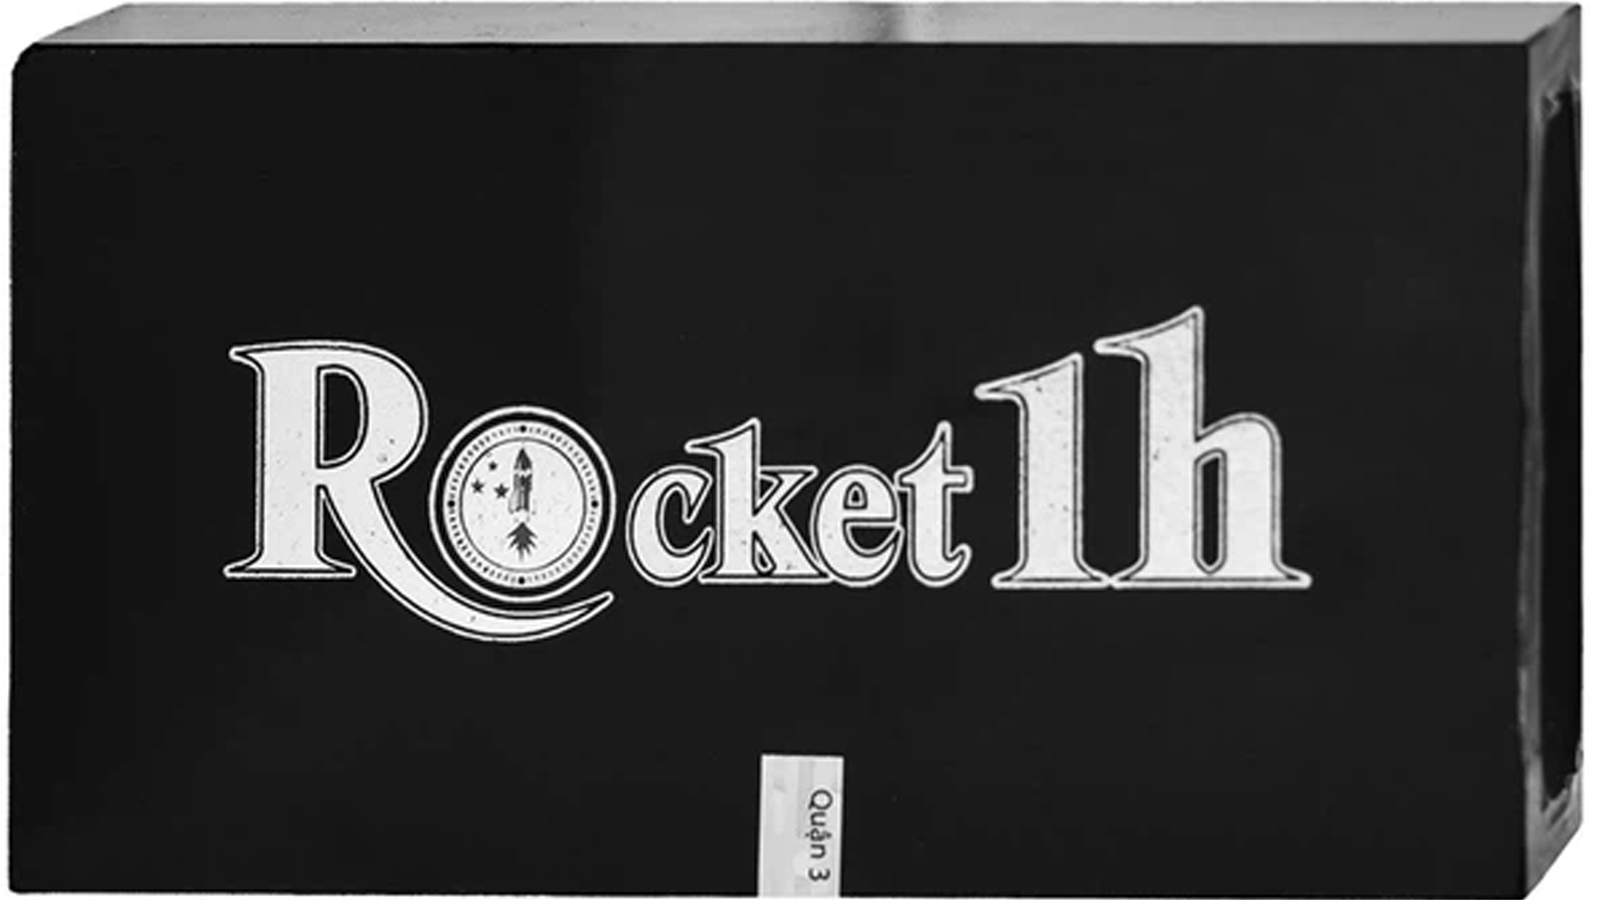 Rocket 1h được chiết xuất từ những thành phần nào?
